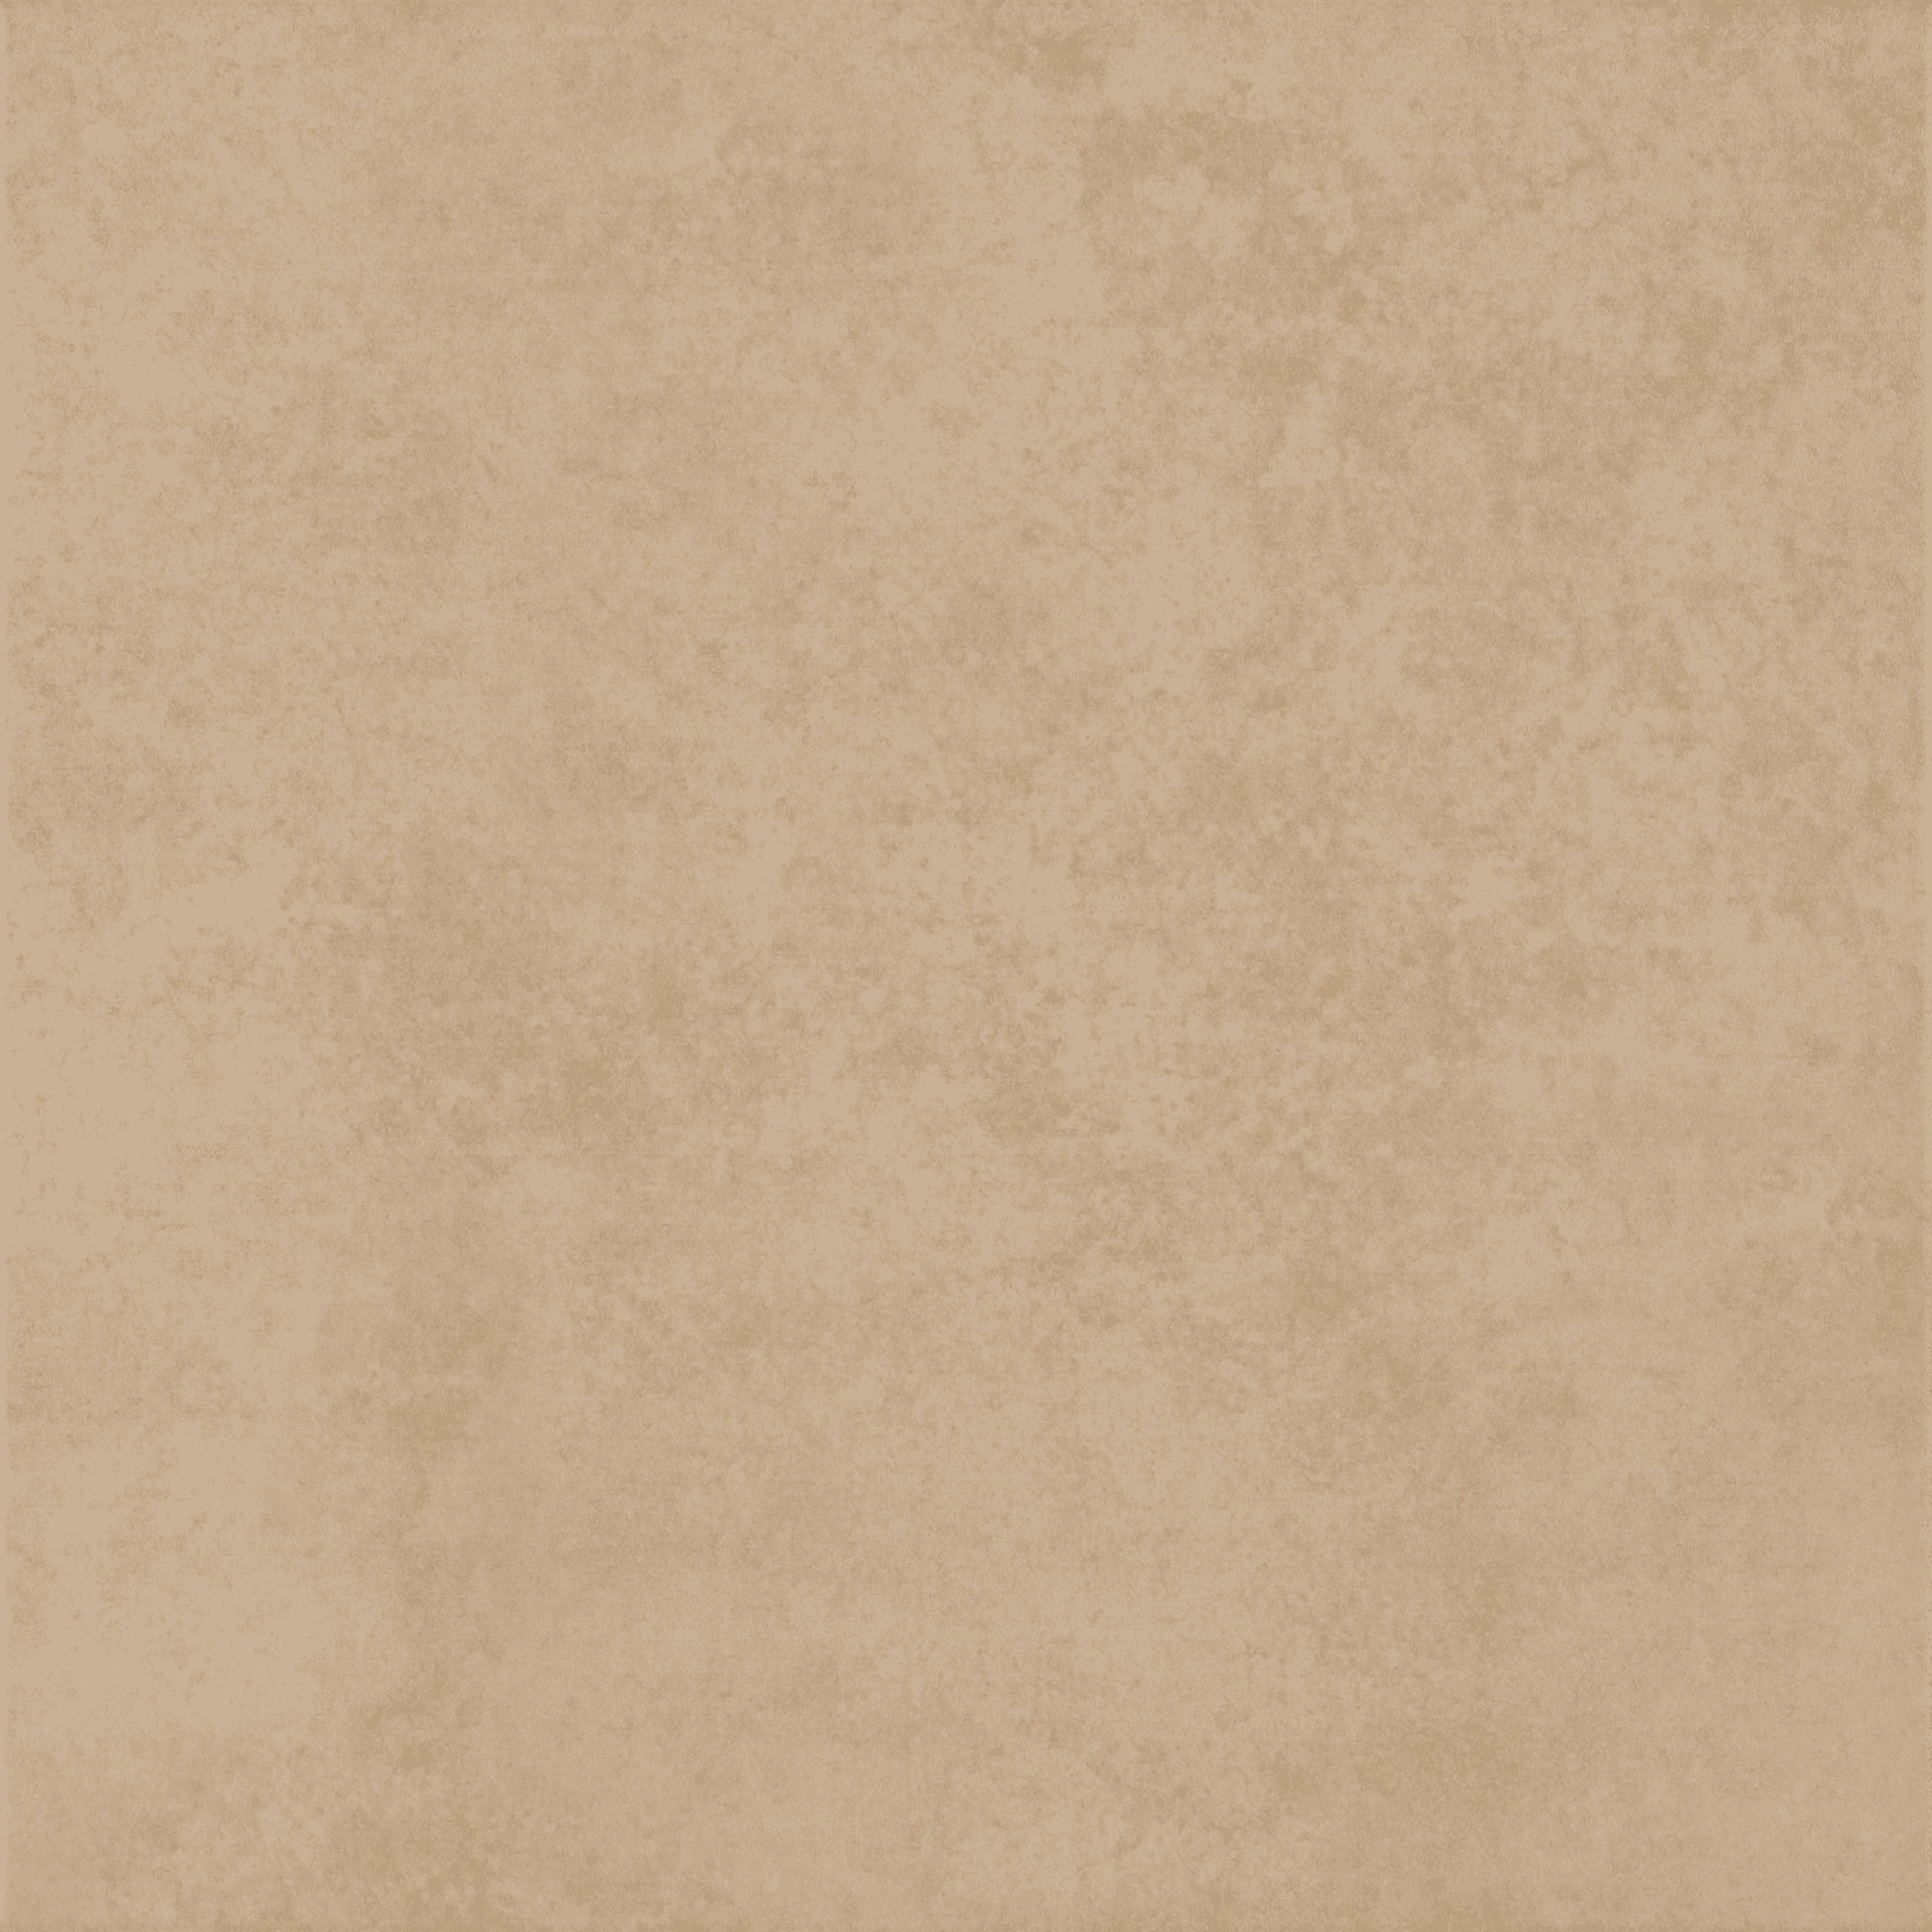 фото Керамогранит unitile адамас коричневый 450x450x9 мм (8 шт. = 1,62 кв.м)